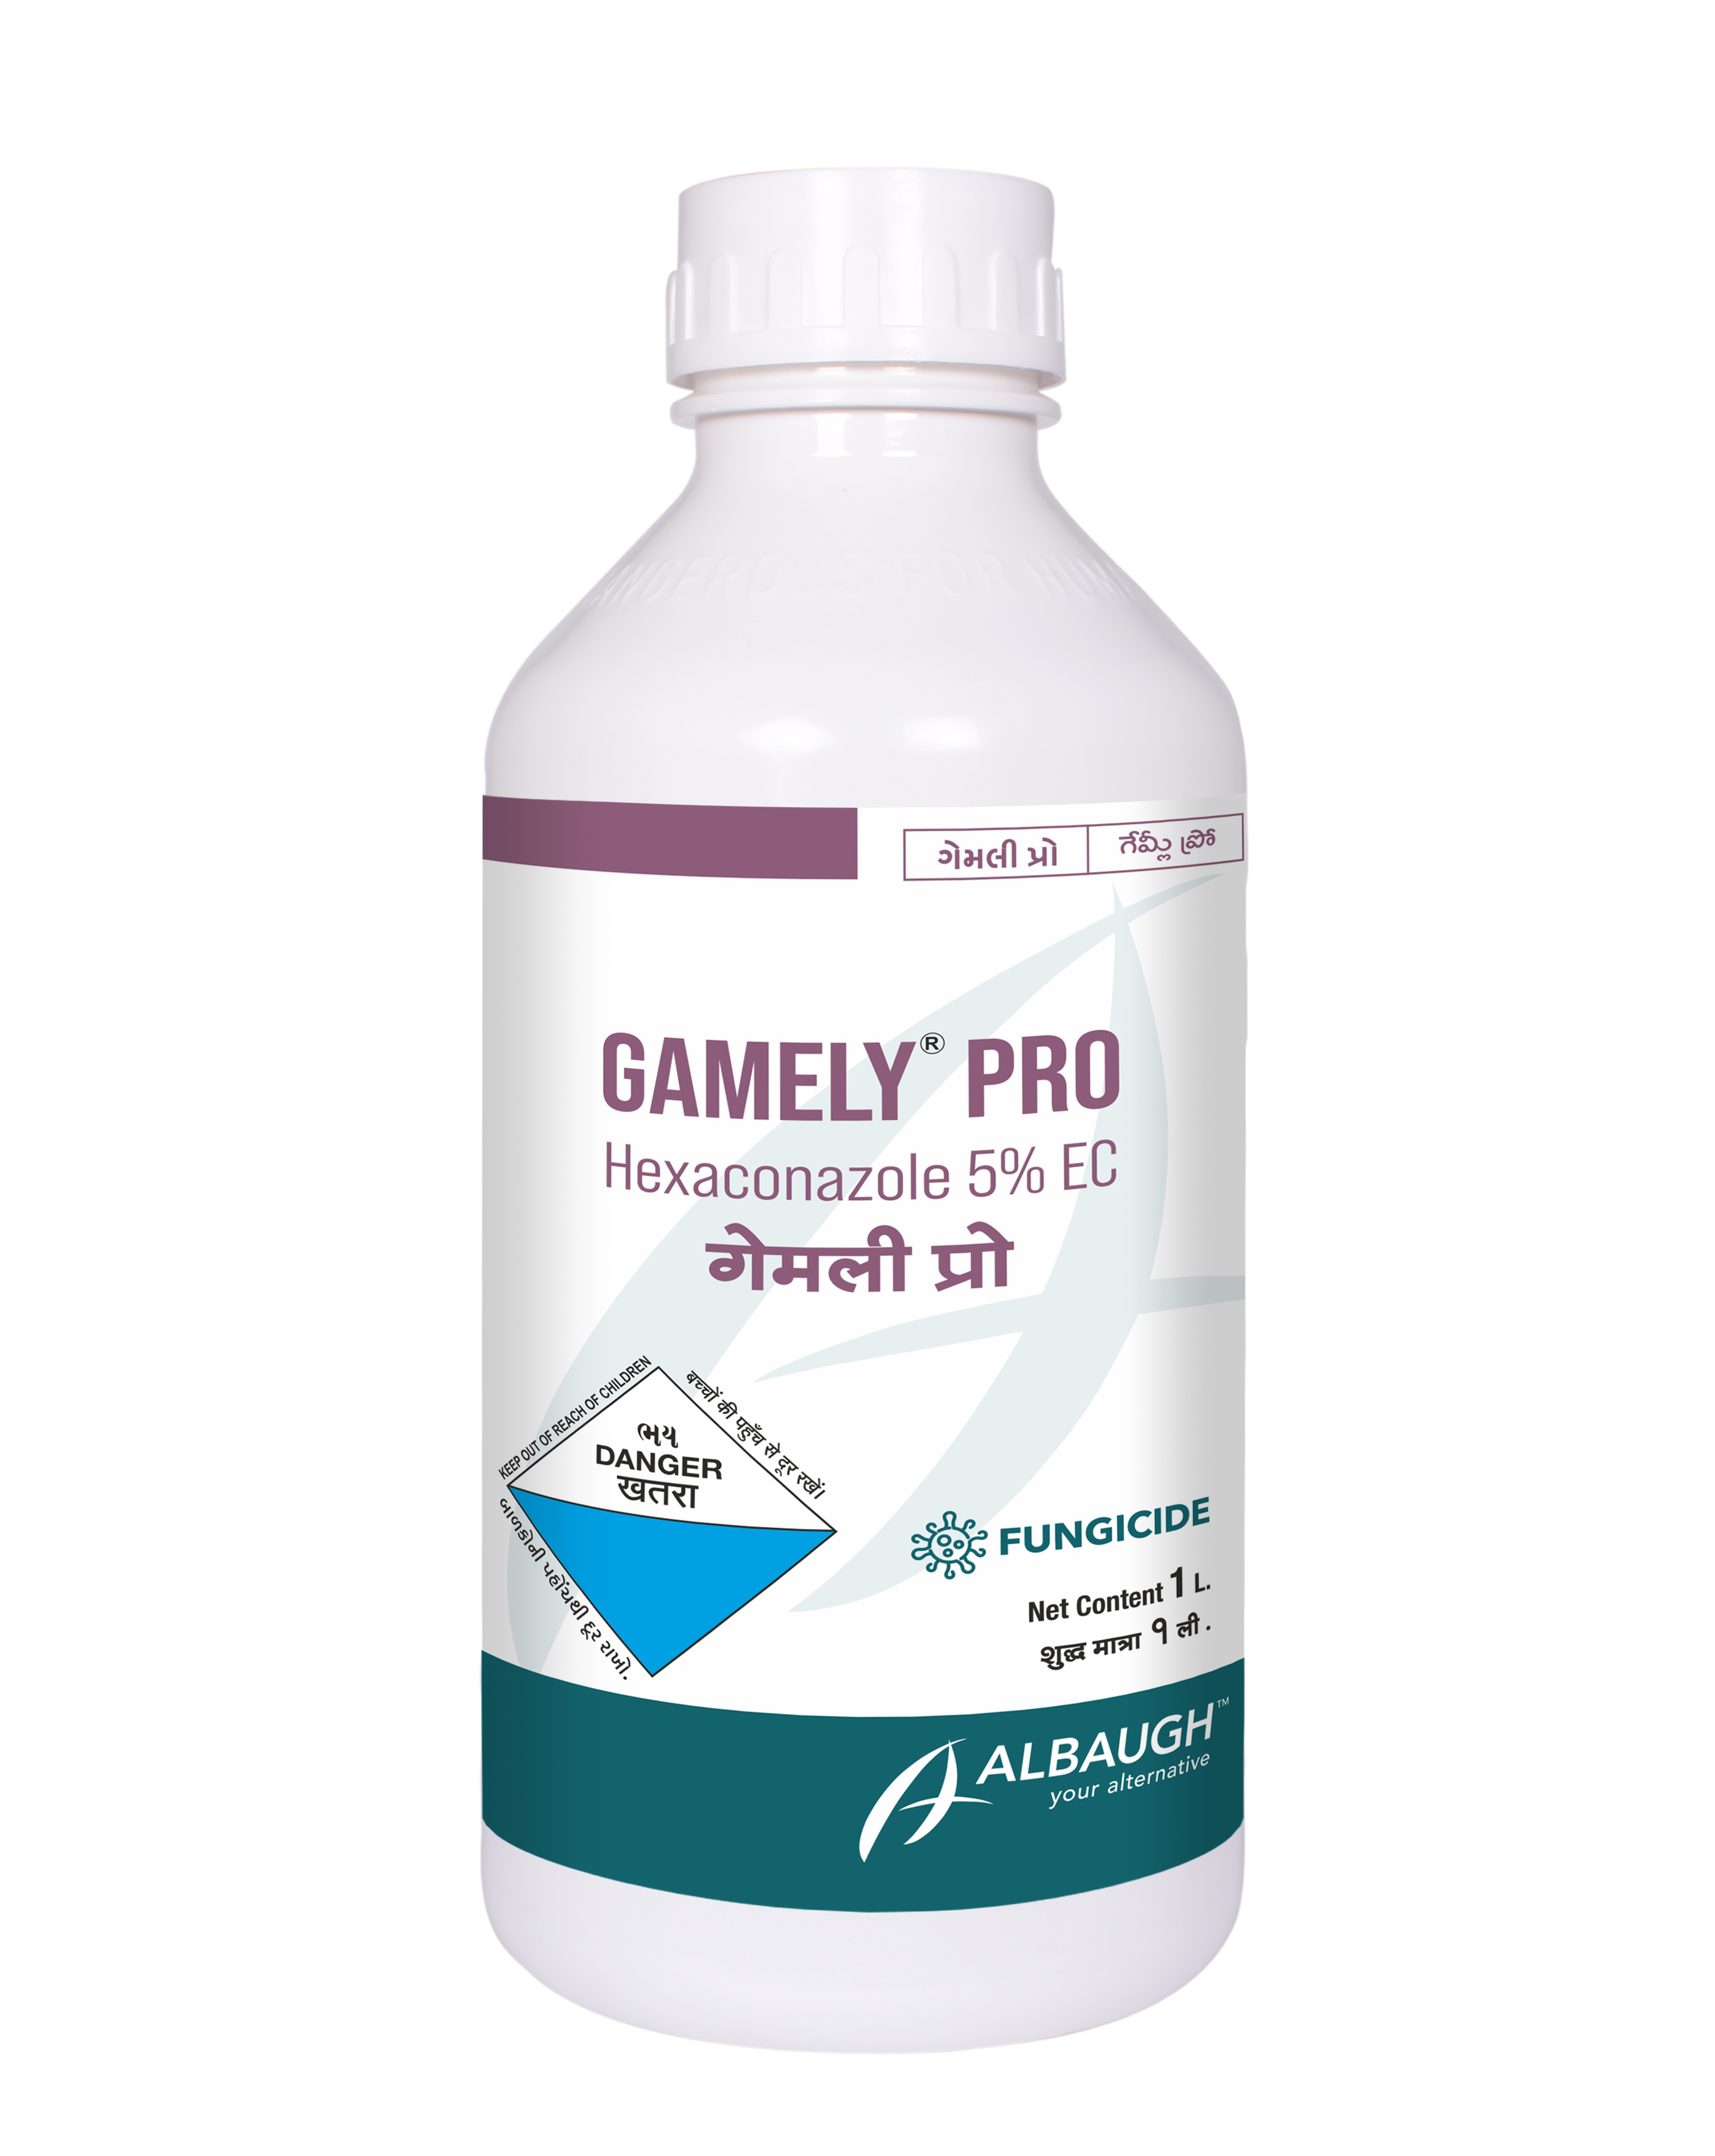 Gamely Pro: Hexaconazole 5% EC